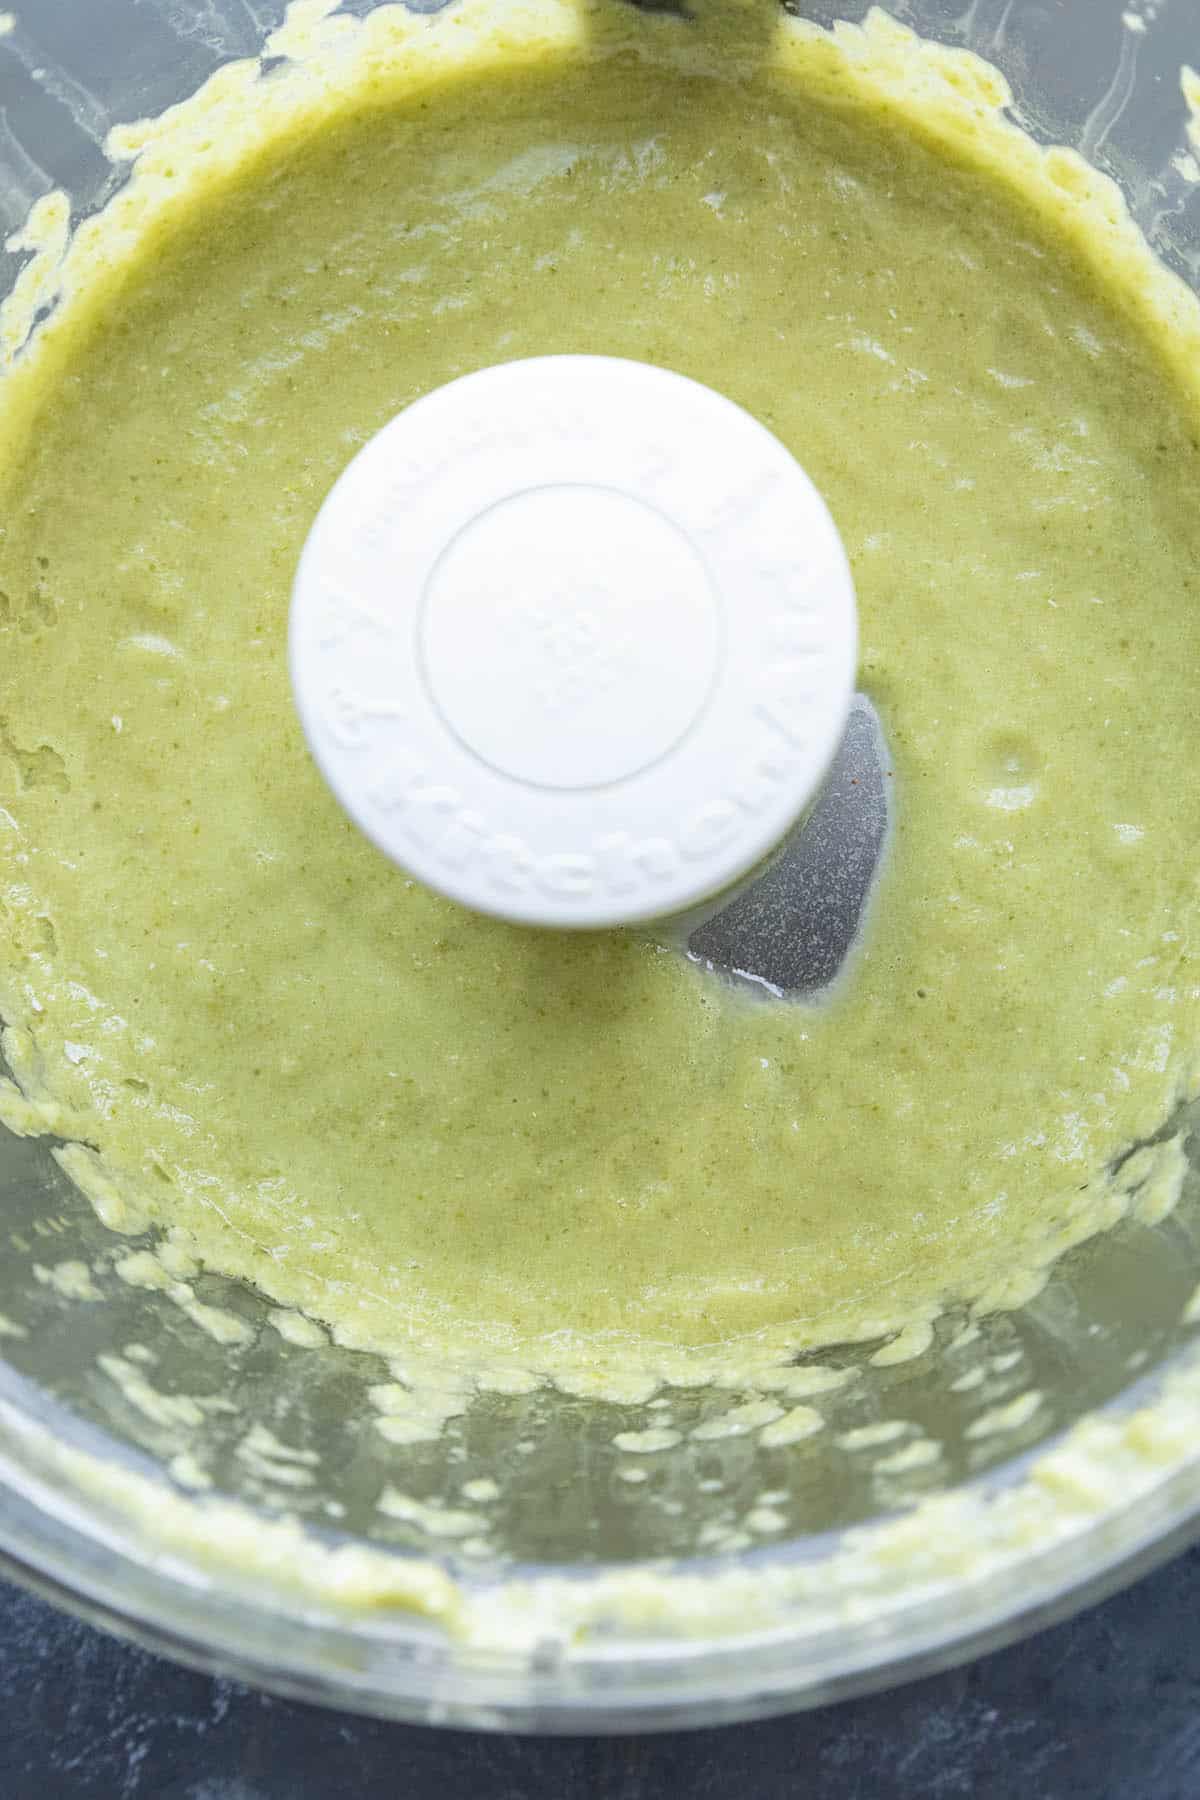 Creamy Jalapeno Sauce in a food processor